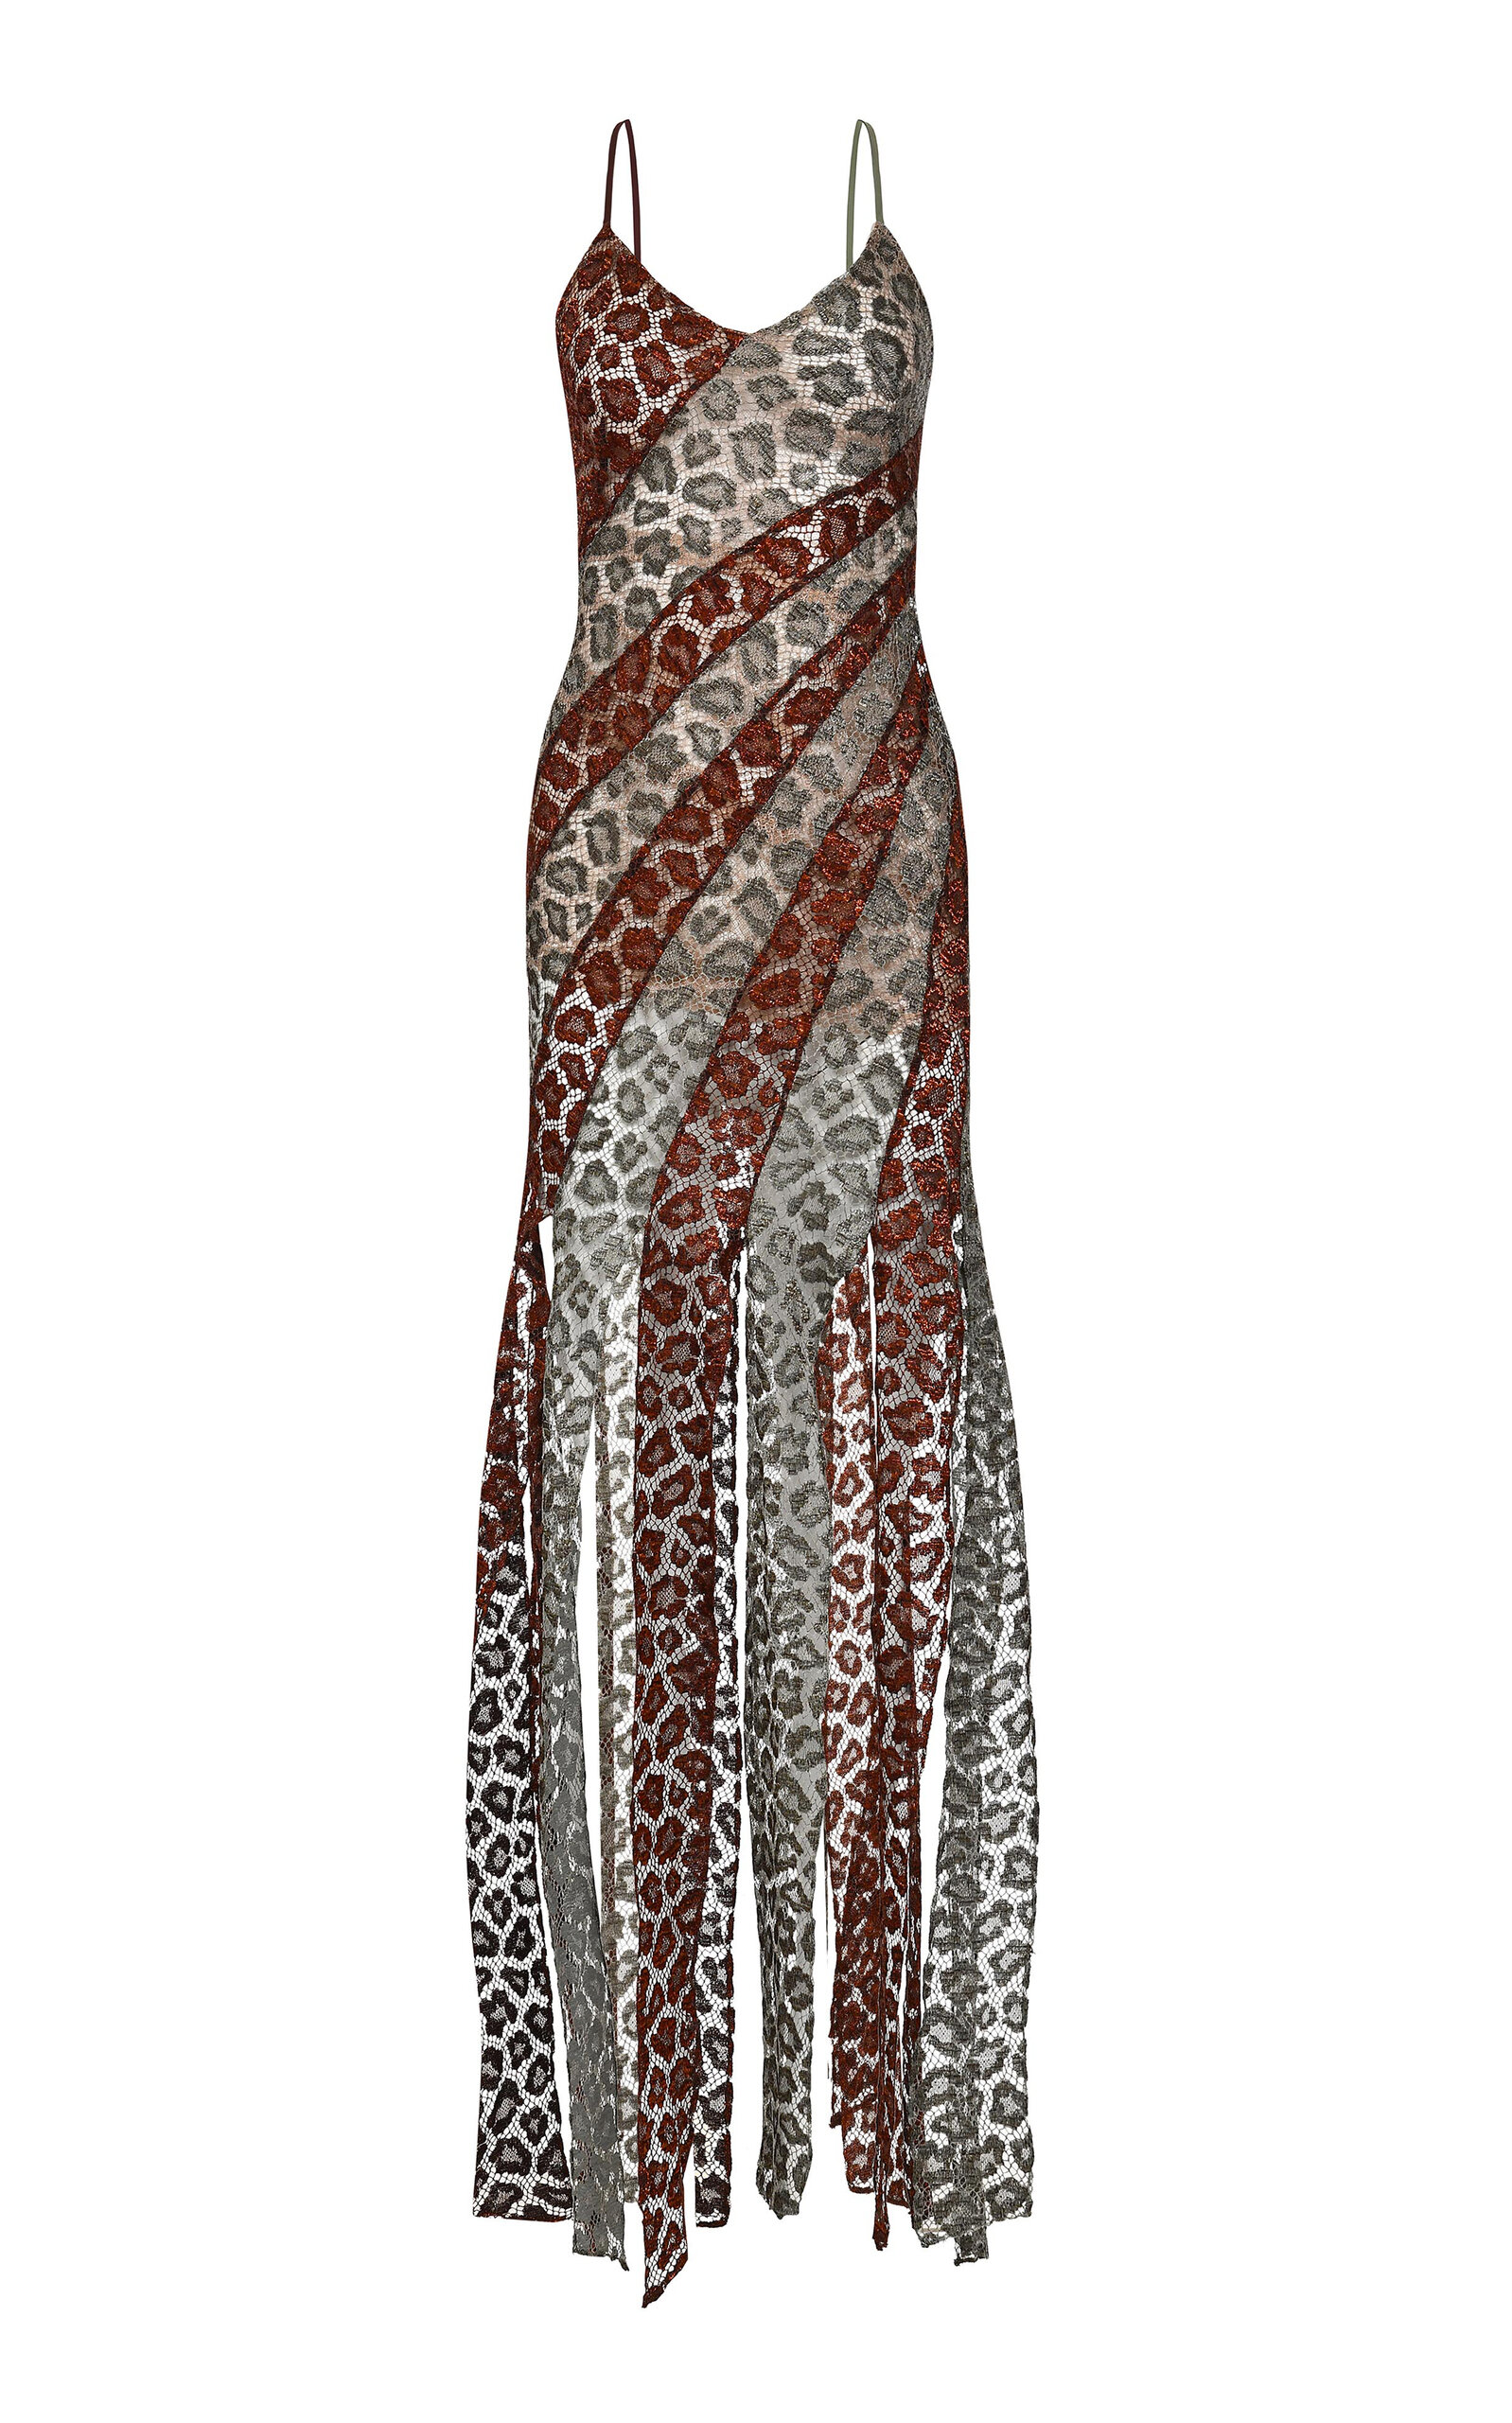 Hera Fringed Paneled Lace Dress